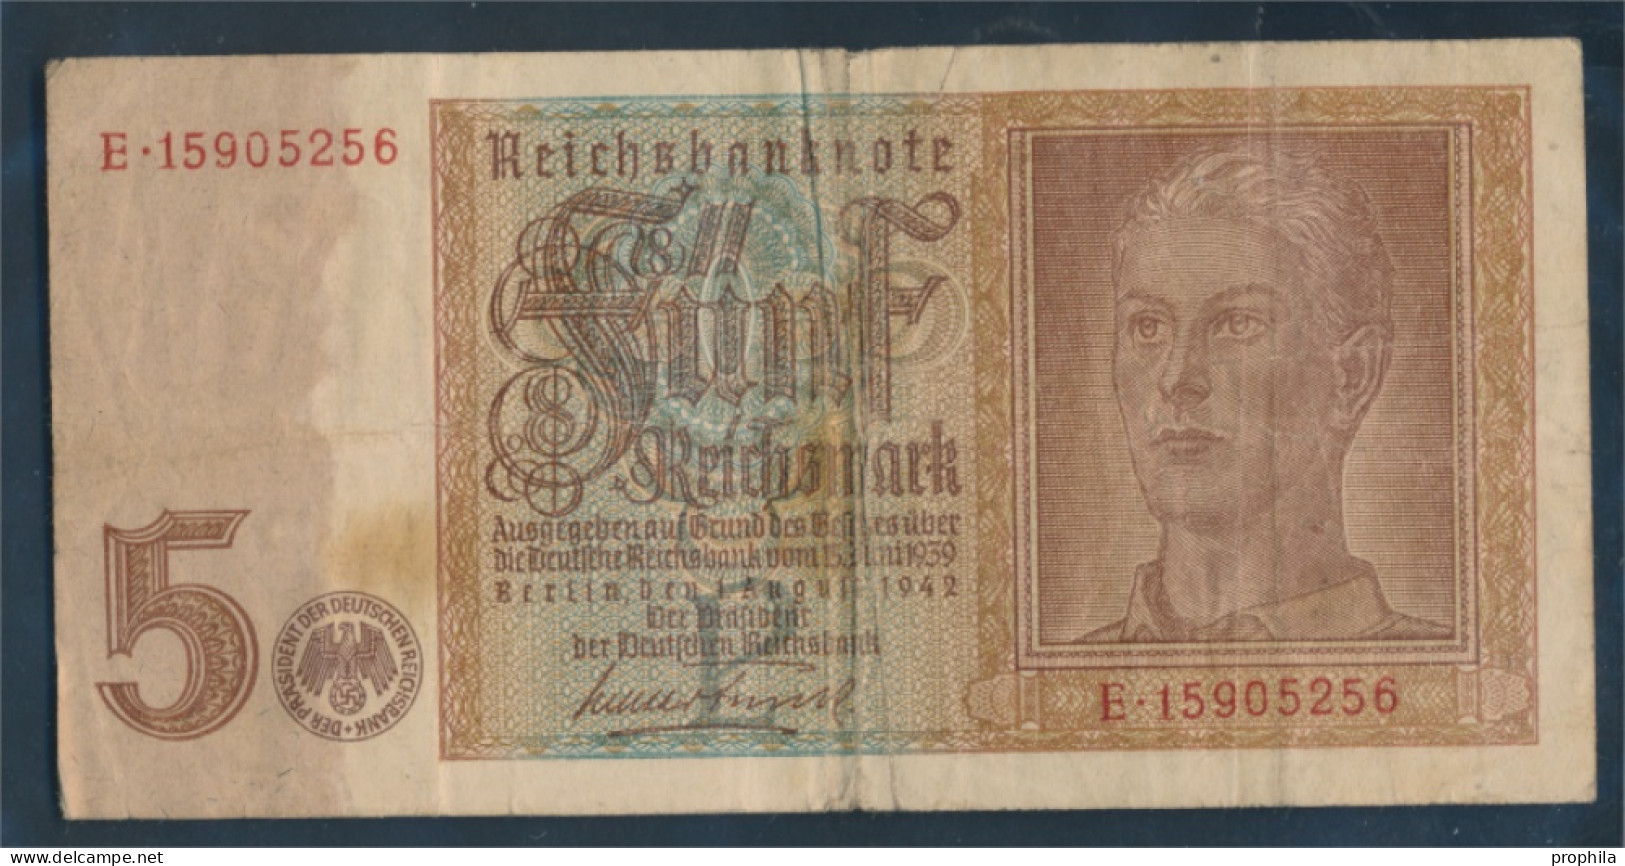 Deutsches Reich Rosenbg: 179b, 8stellige Kontrollnummer Gebraucht (III) 1942 5 Reichsmark (10288371 - 5 Reichsmark